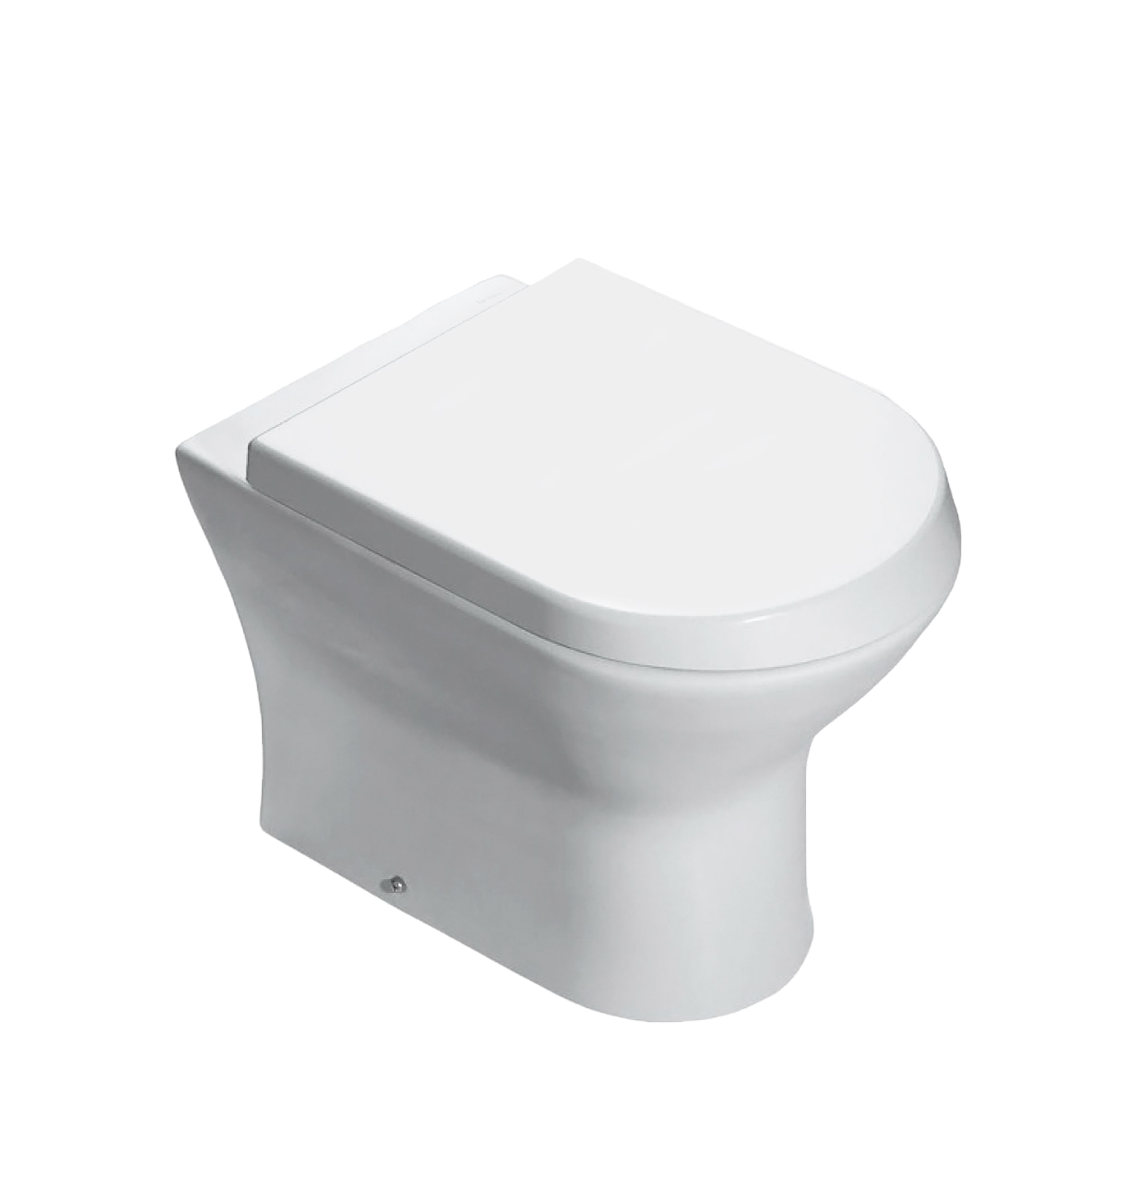 WC šolja NEXO bela odvod u zid